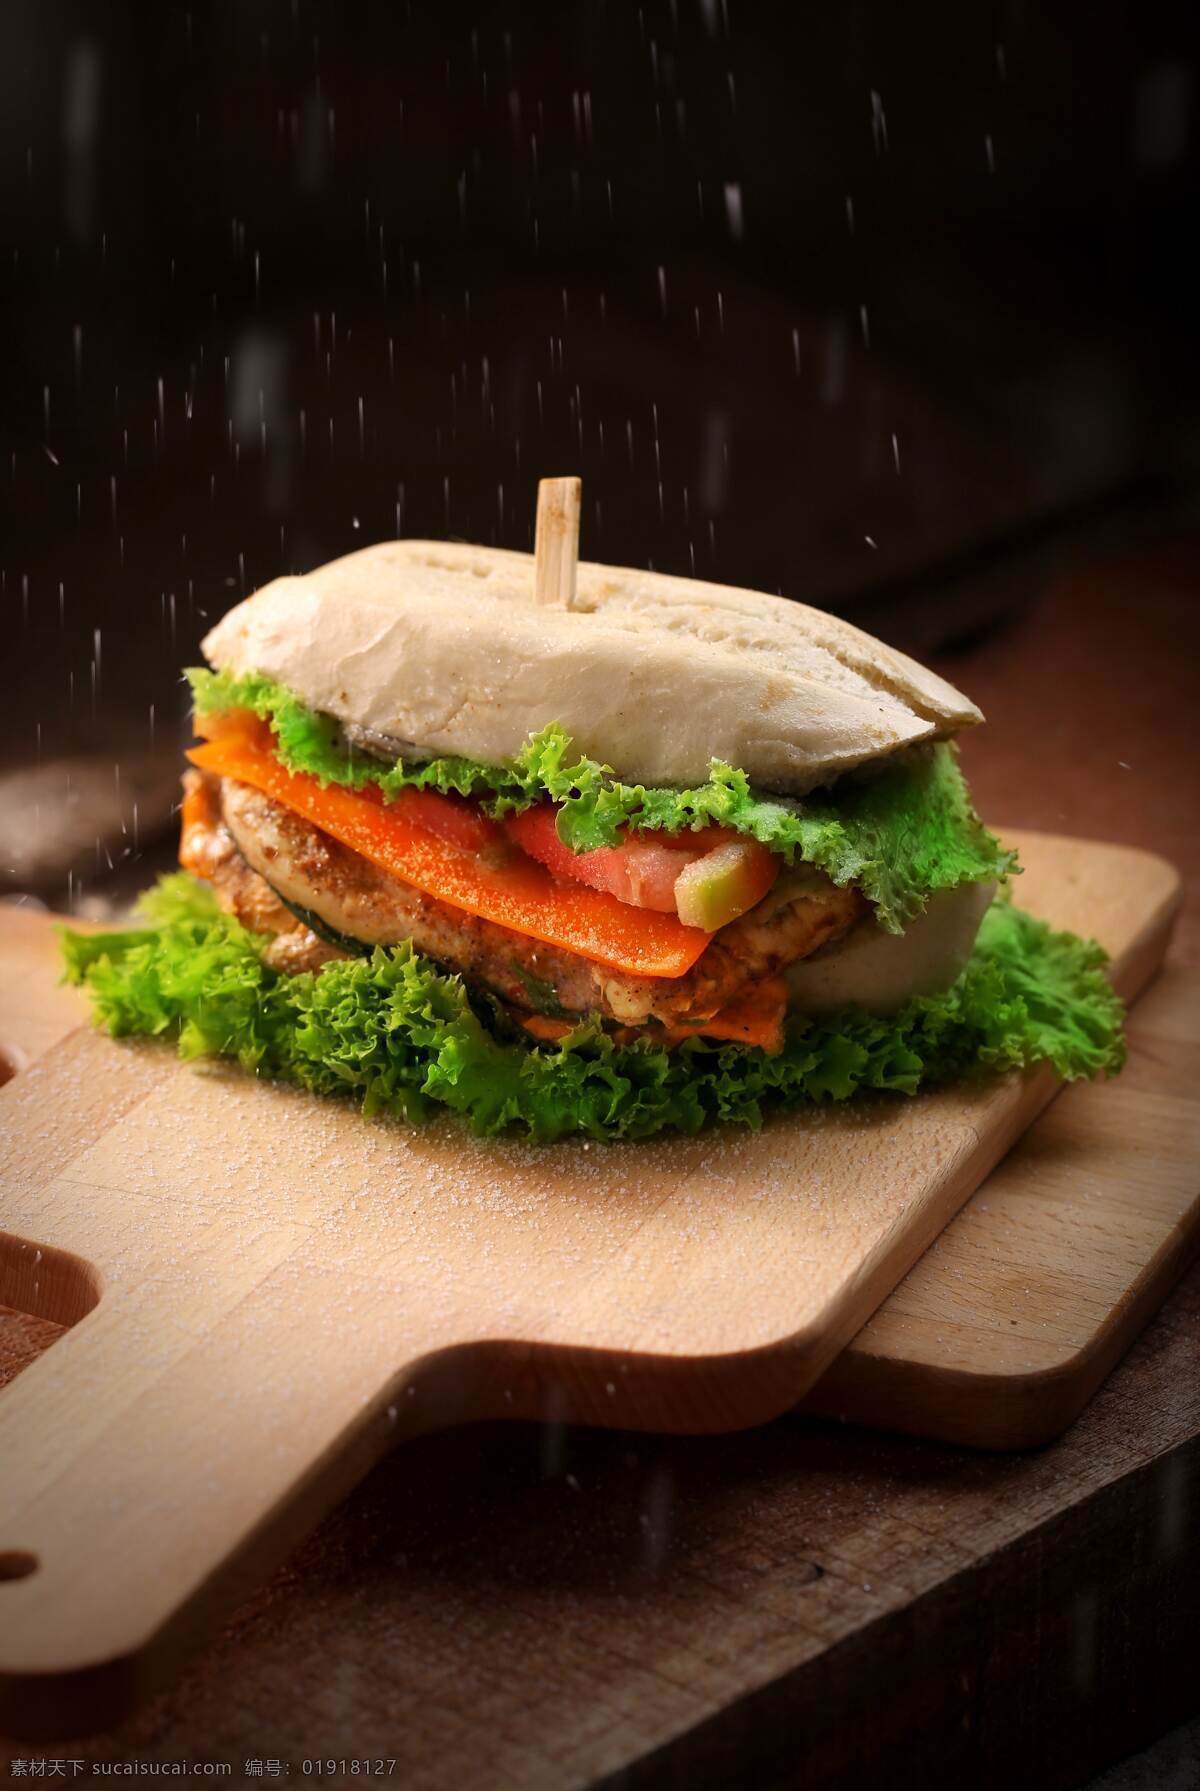 三明治 汉堡 快餐 麦当劳 肯德基 面包 肉夹馍 西餐 美食 食品 餐厅 烹饪 餐饮美食 西餐美食